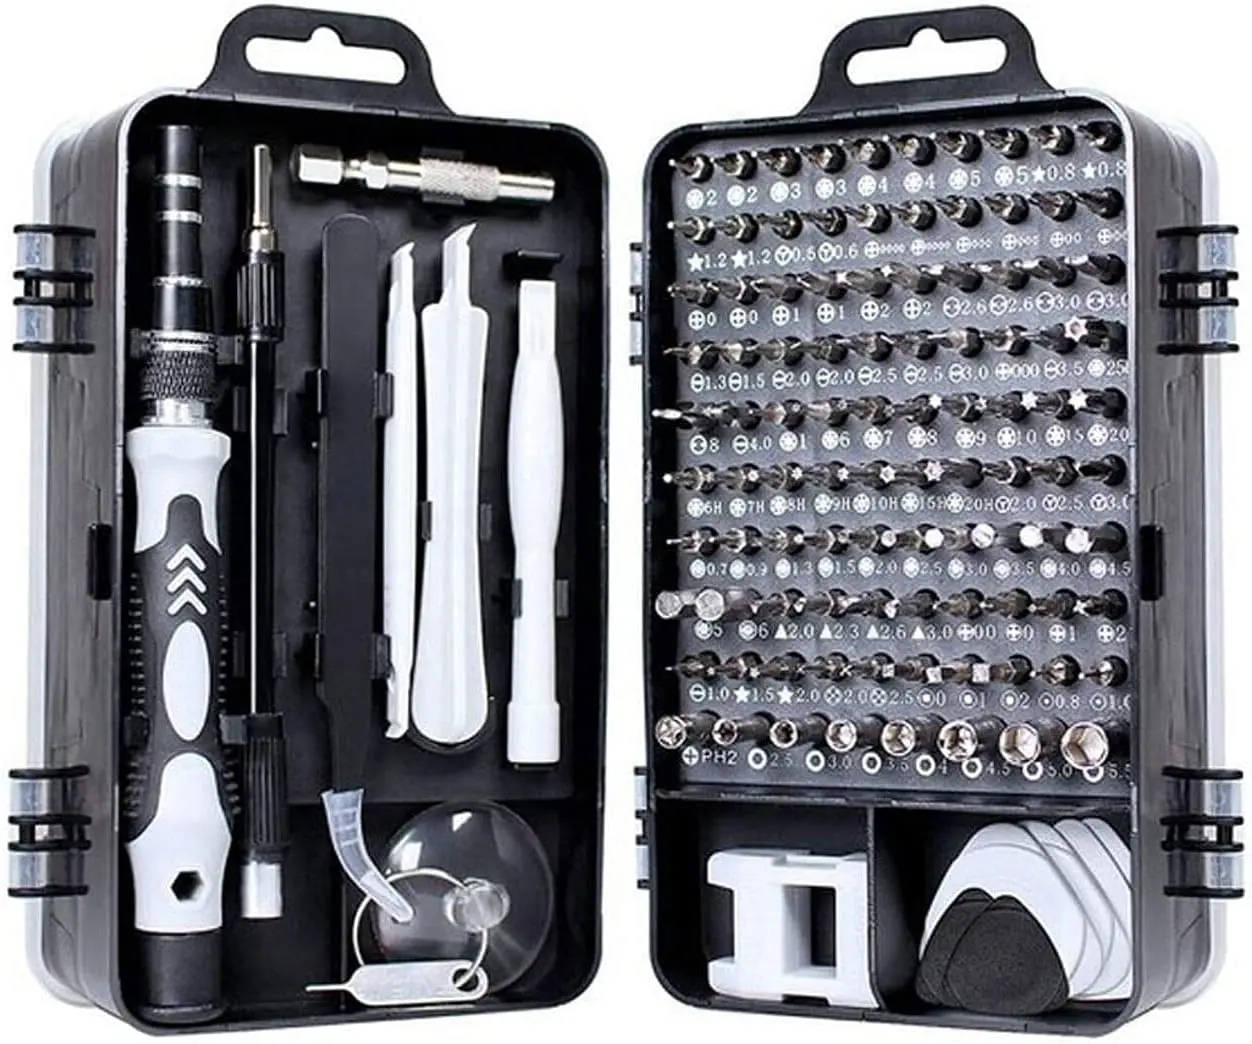 

Conjunto de chaves de fenda de precisão 115 em 1 kit de ferramentas de reparo com kit de driver magnético, conjunto de chaves